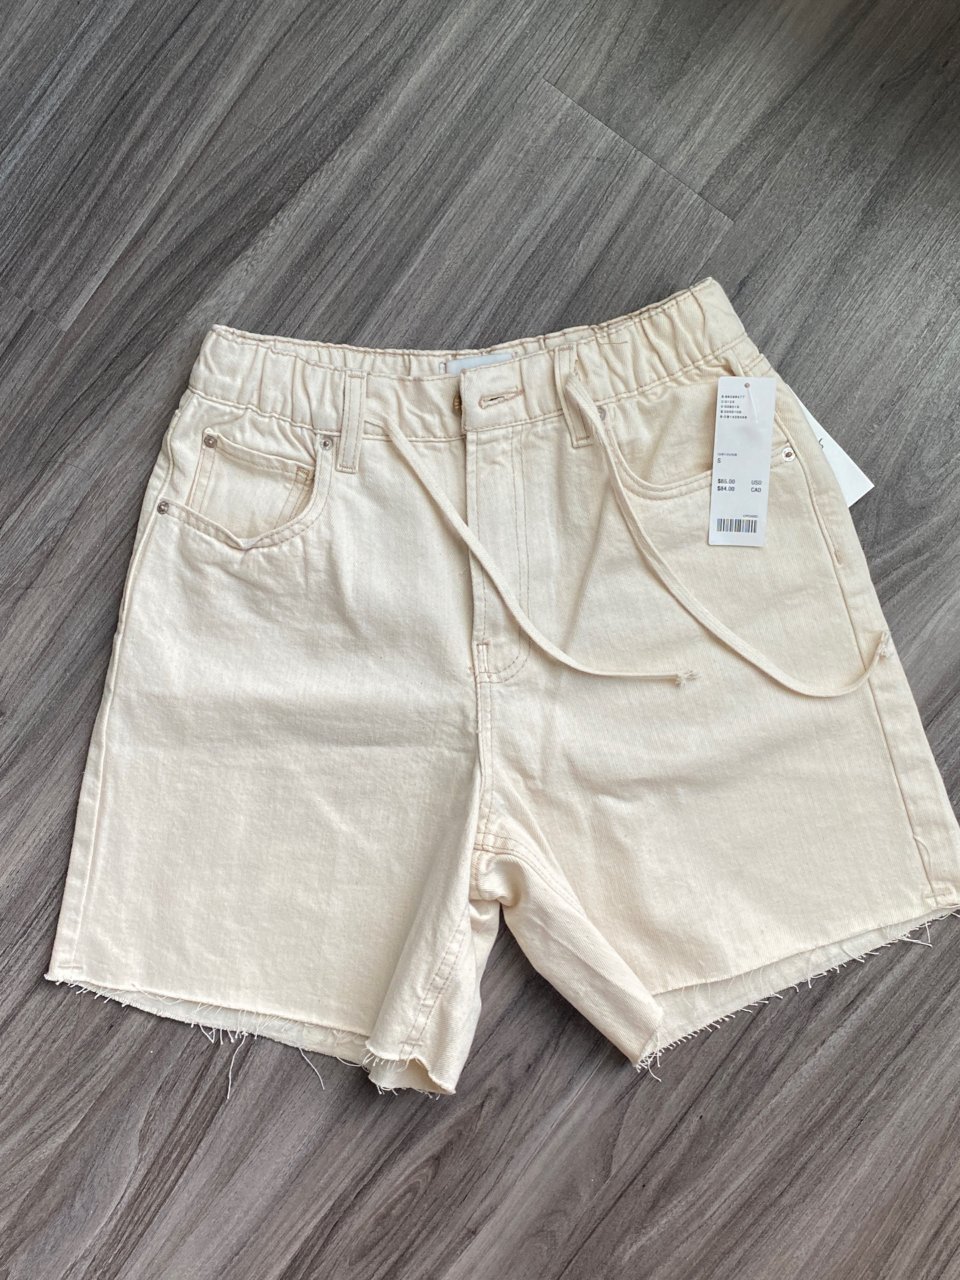 UO羊毛小记｜$8.17的乳白色牛仔短裤...